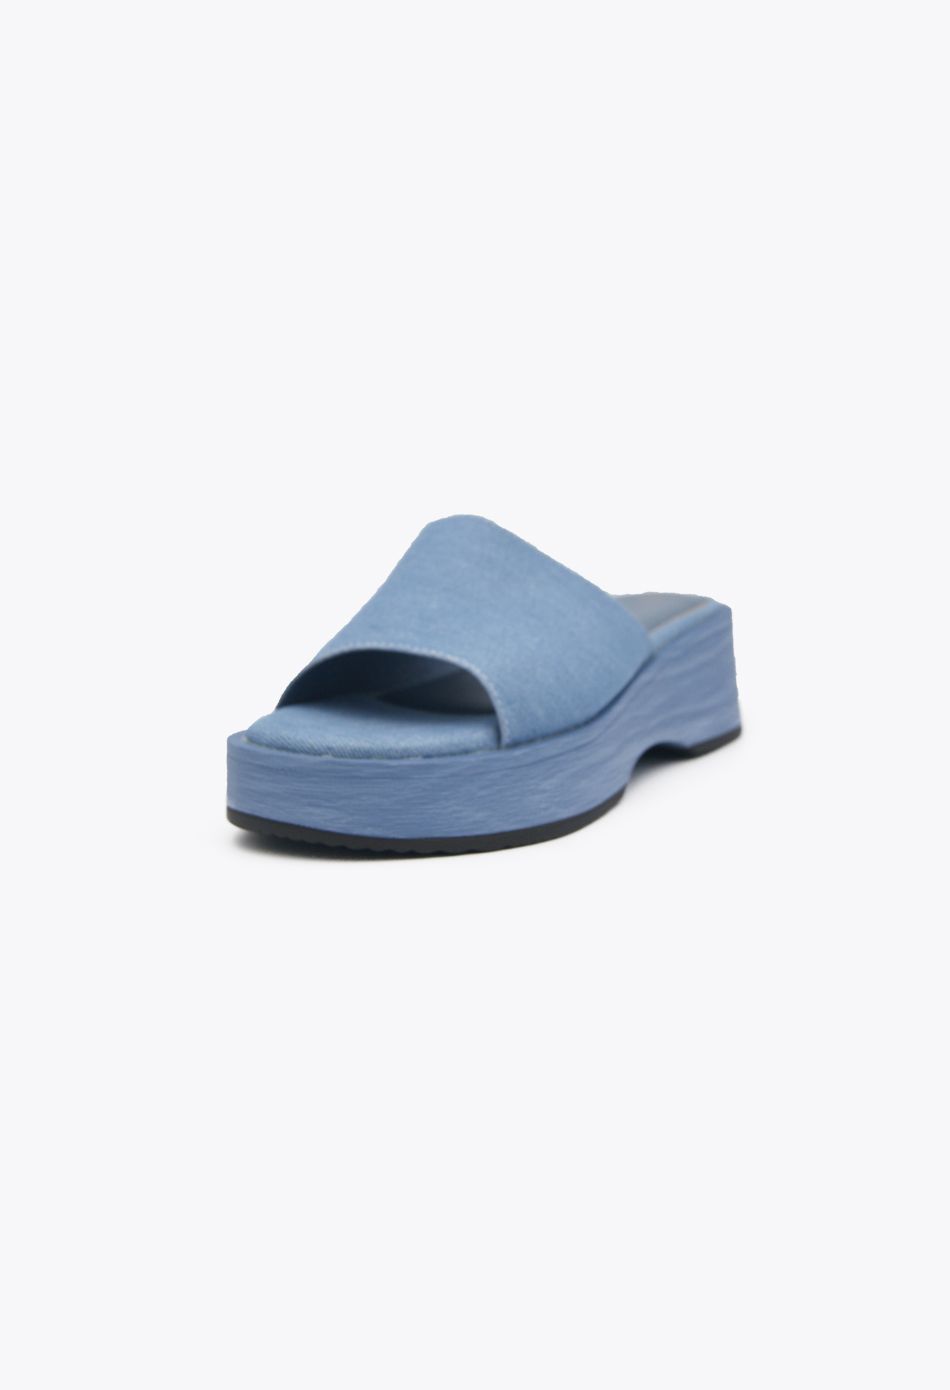 Πλατφόρμες Μονόχρωμες Μπλε / F1516-blue Ανοιχτά Παπούτσια joya.gr